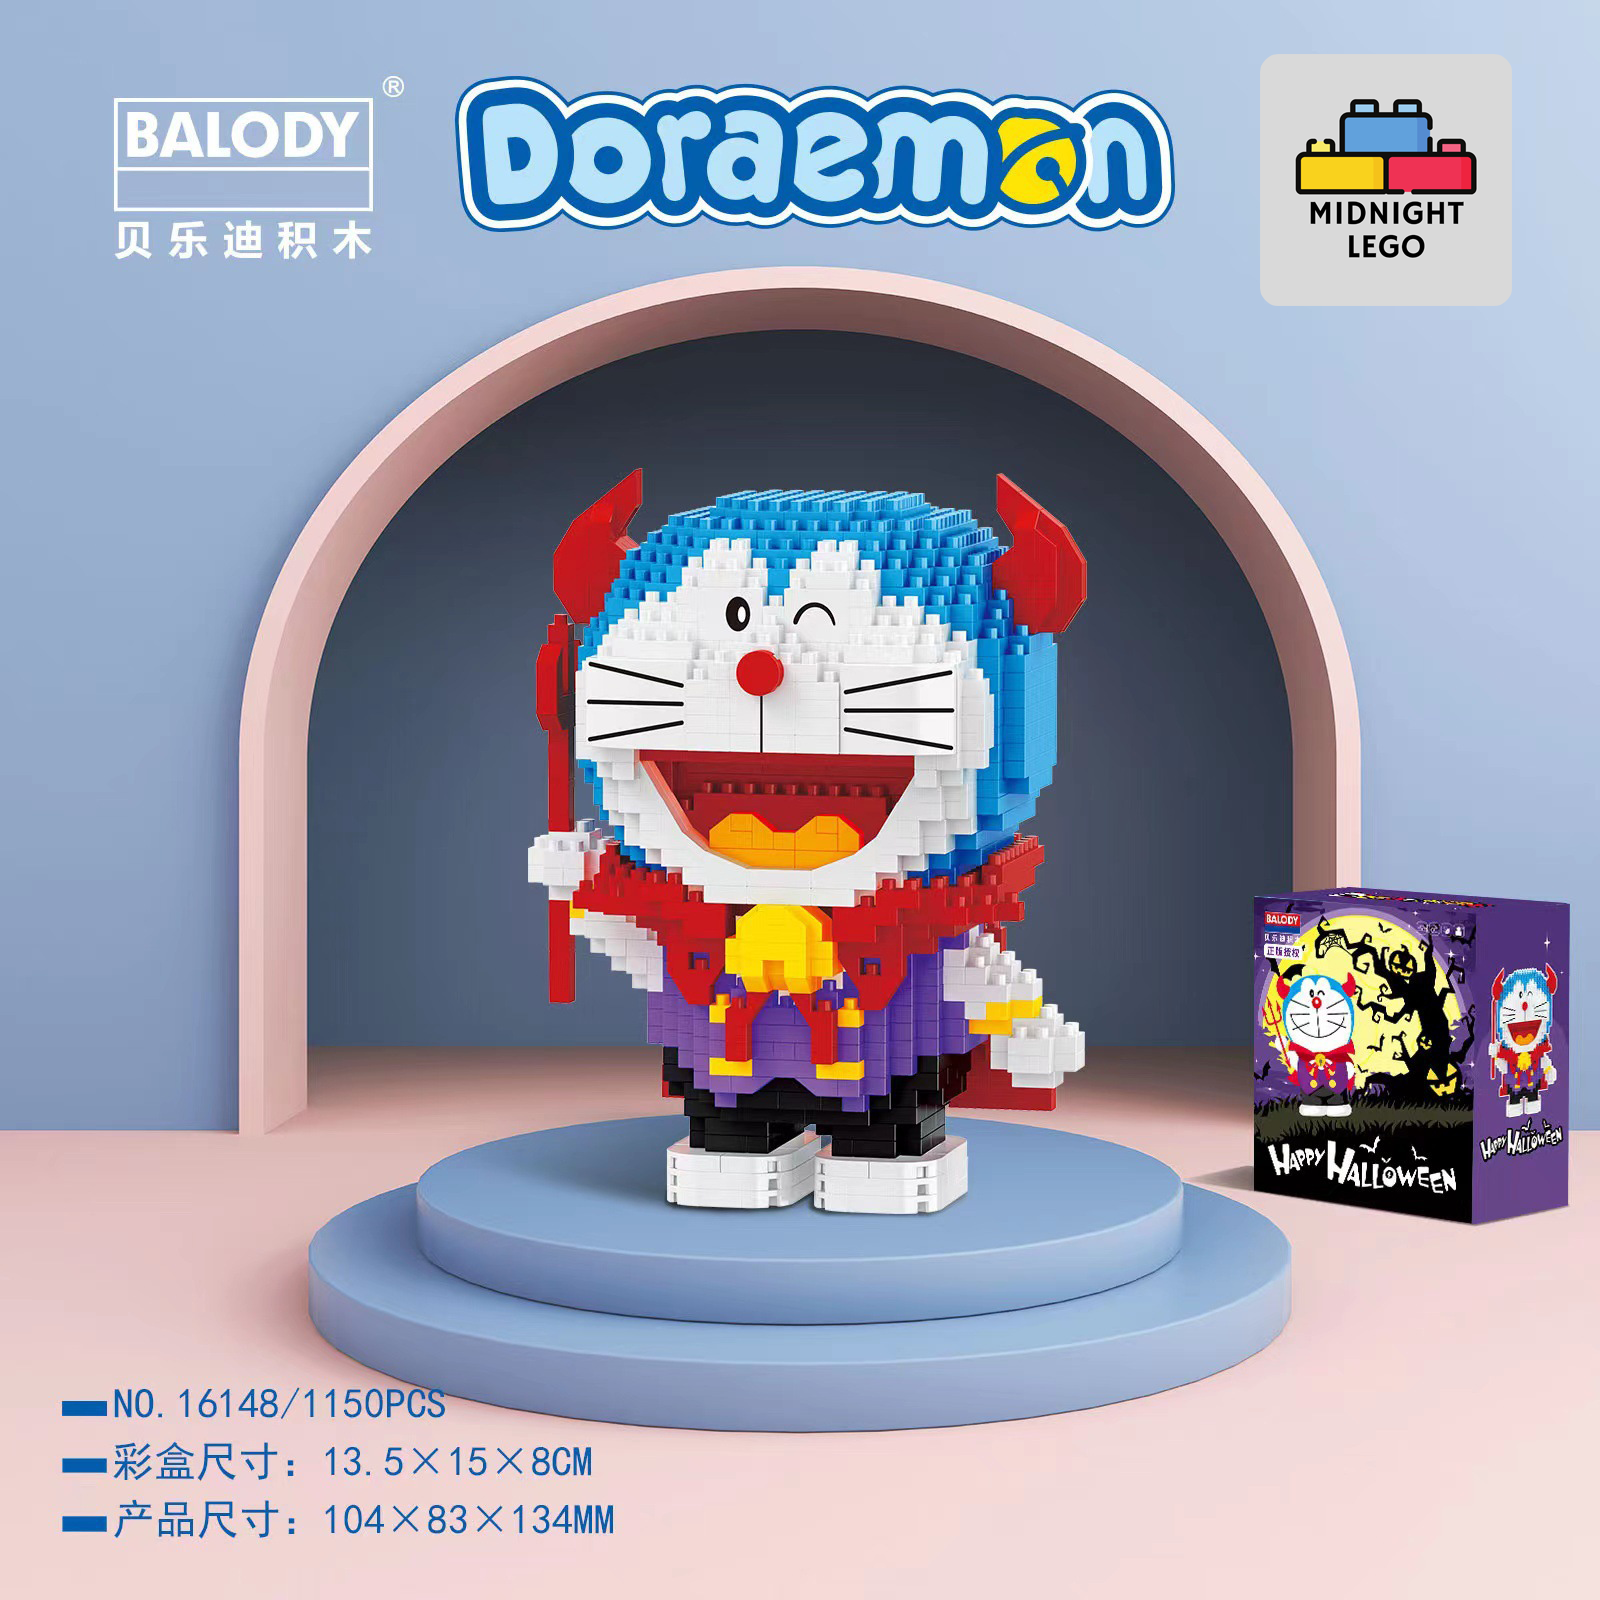 Bộ xếp hình Doraemon LEGO: Mang sự sống động của những nhân vật hoạt hình vào thế giới LEGO của bạn với bộ xếp hình Doraemon LEGO. Thiết kế độc đáo và chất lượng hoàn hảo sẽ mang đến cho bạn và con em của bạn một trải nghiệm tuyệt vời. Hãy đến và xây dựng những tạo vật đáng yêu với bộ xếp hình Doraemon LEGO!